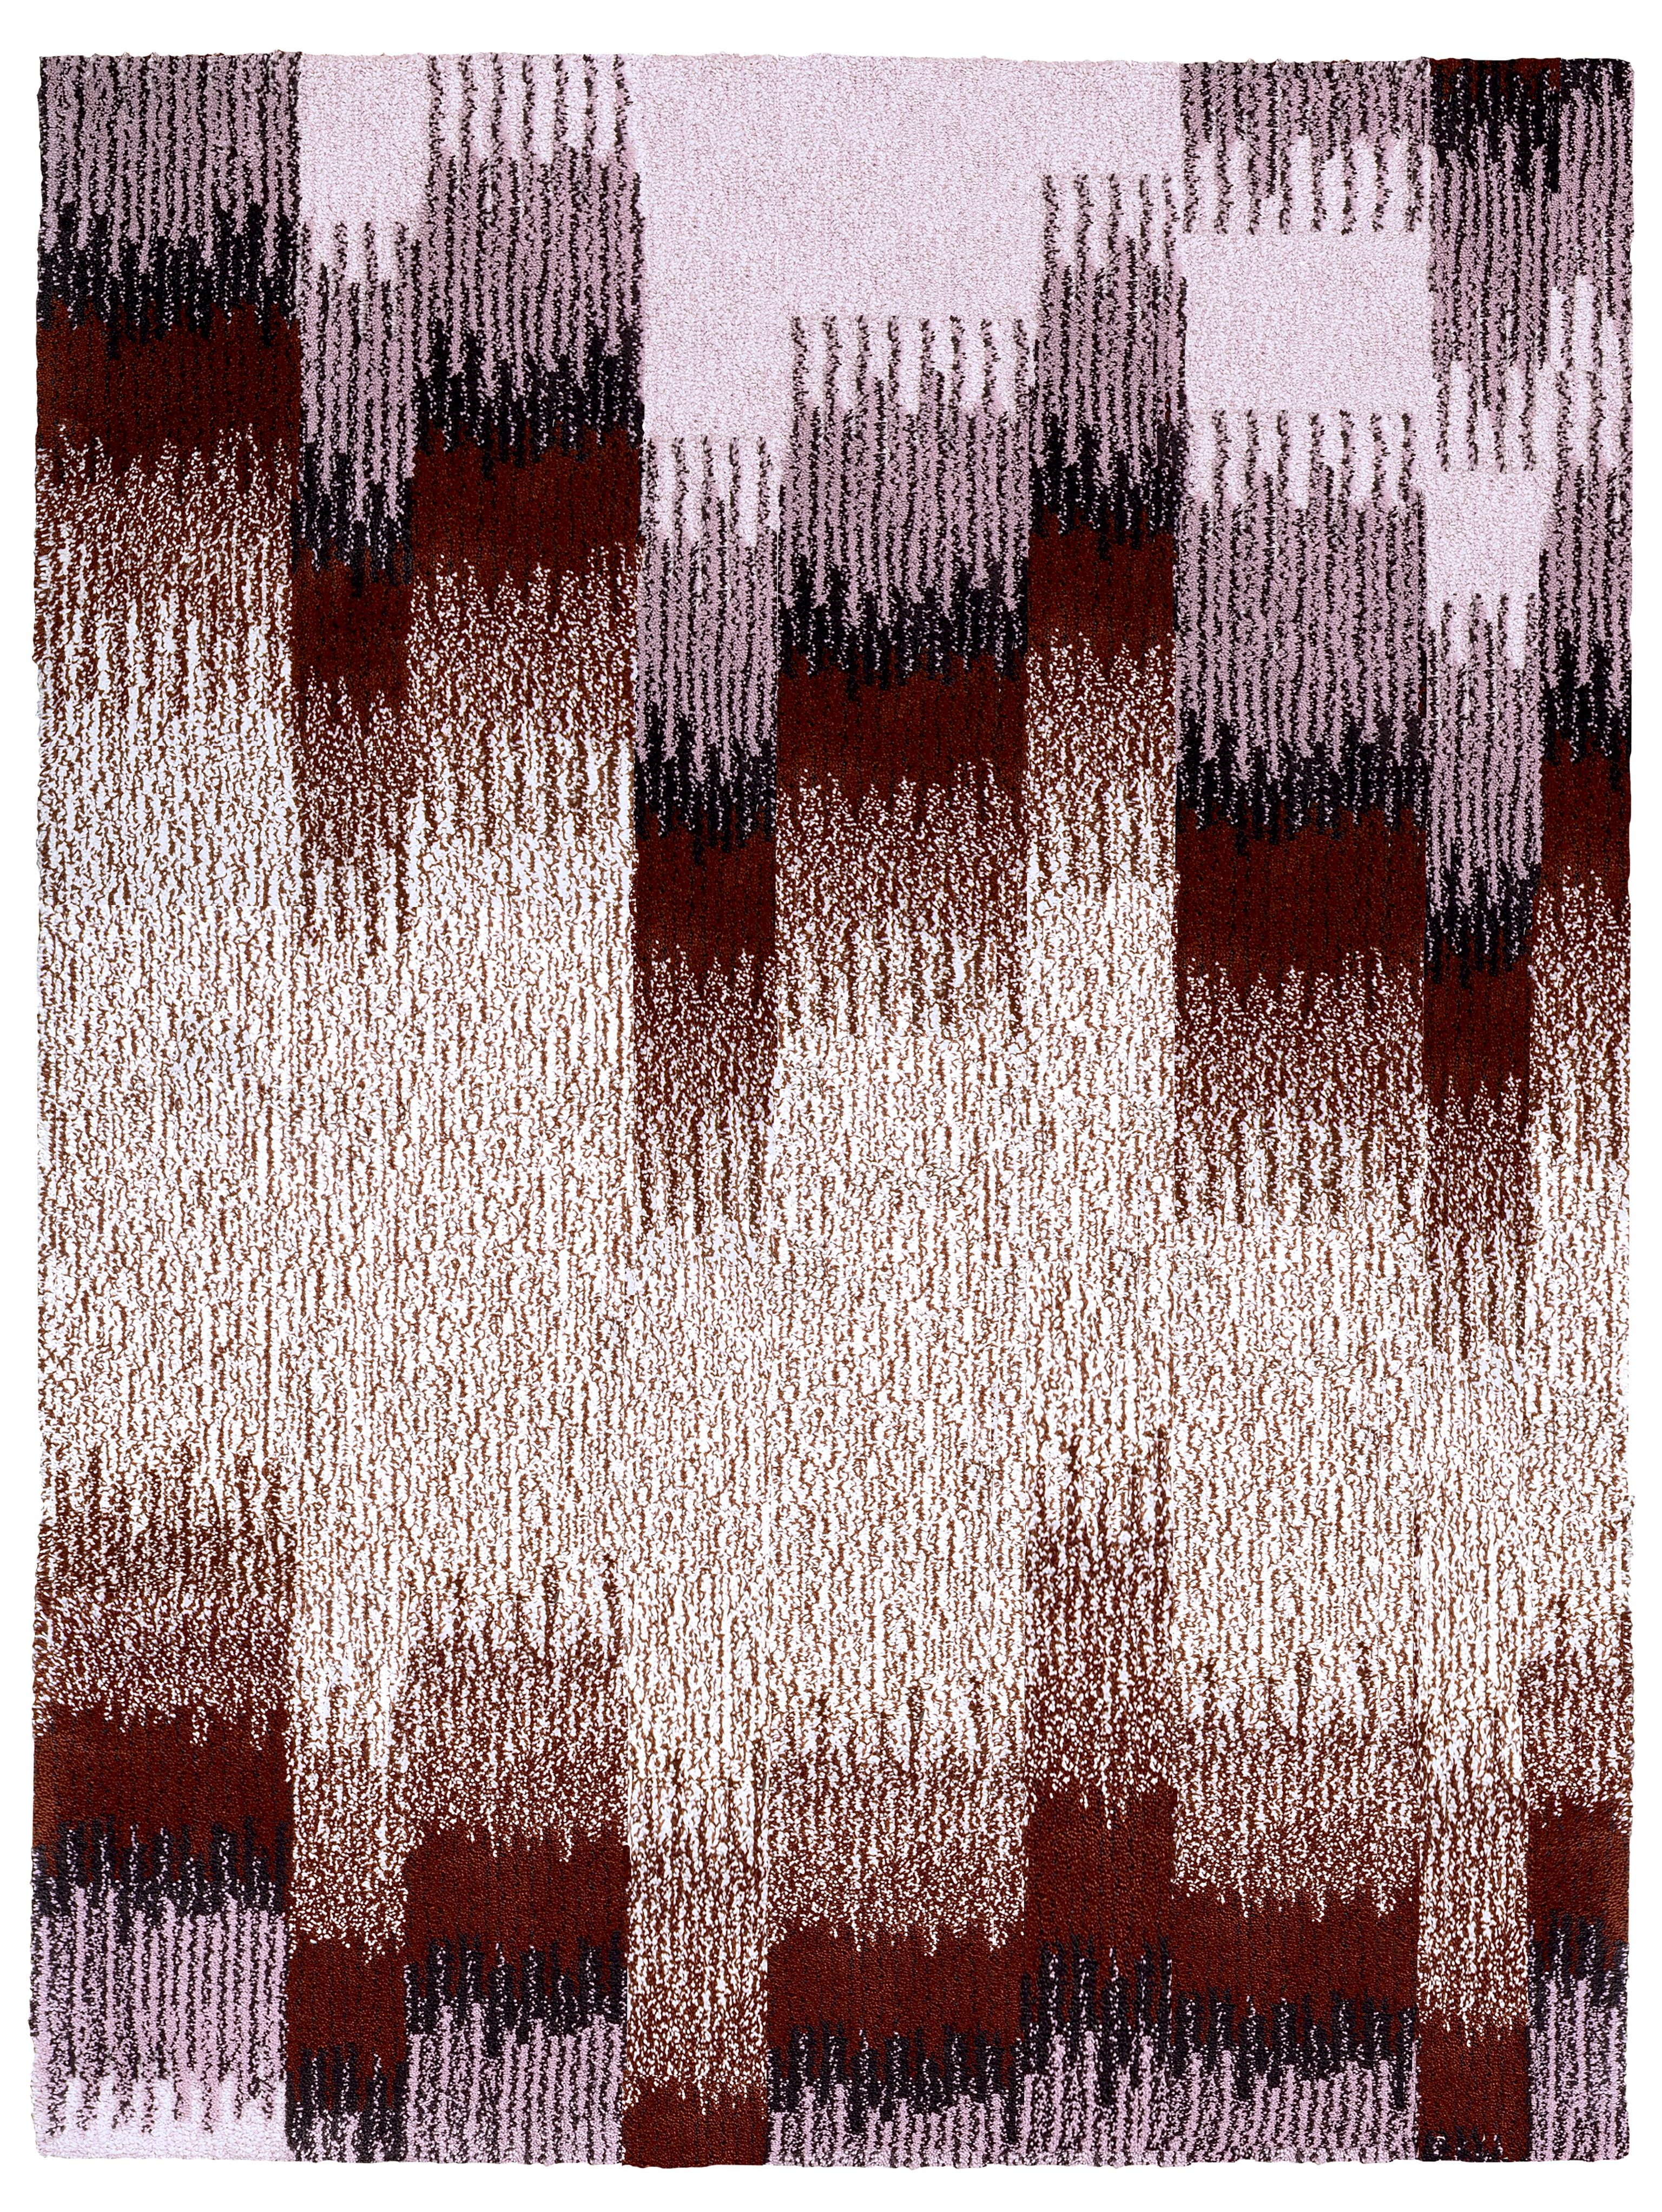 Epoca Due-Teppich aus Eiche in Bordeaux von Alissa + Nienke 
Abmessungen: B 200 x H 260 cm
MATERIALIEN: 100% neuseeländische Wolle bester Qualität
Erhältlich in den Größen: Medium (150 x 200 cm) und Extra Large (300 x 390 cm). Auch in folgenden